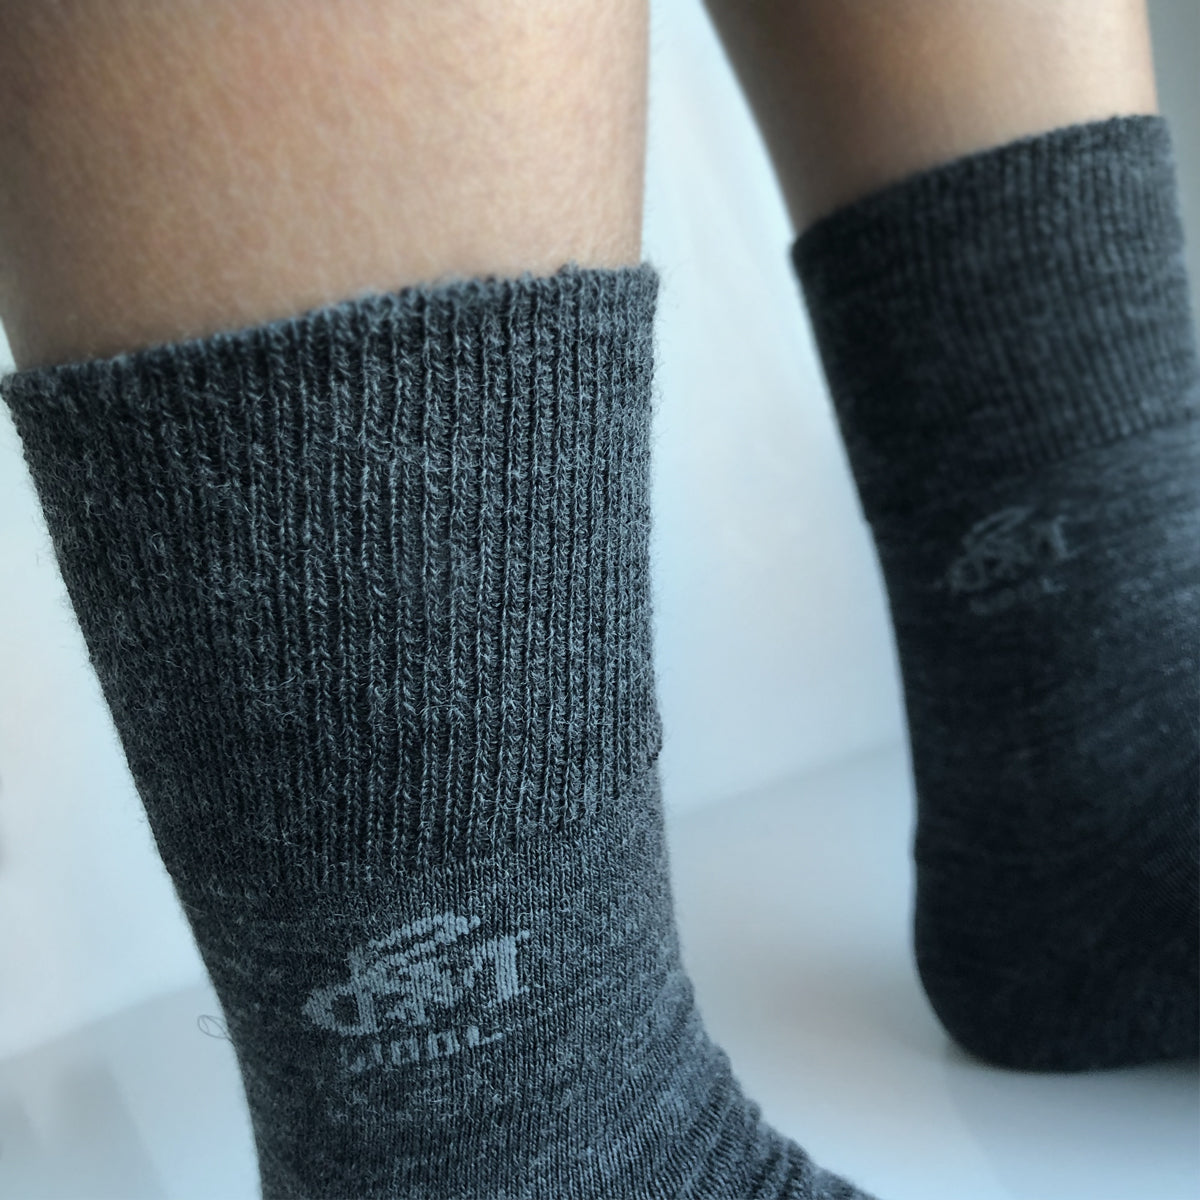 Diabetes socks in wool - socks that do not tighten